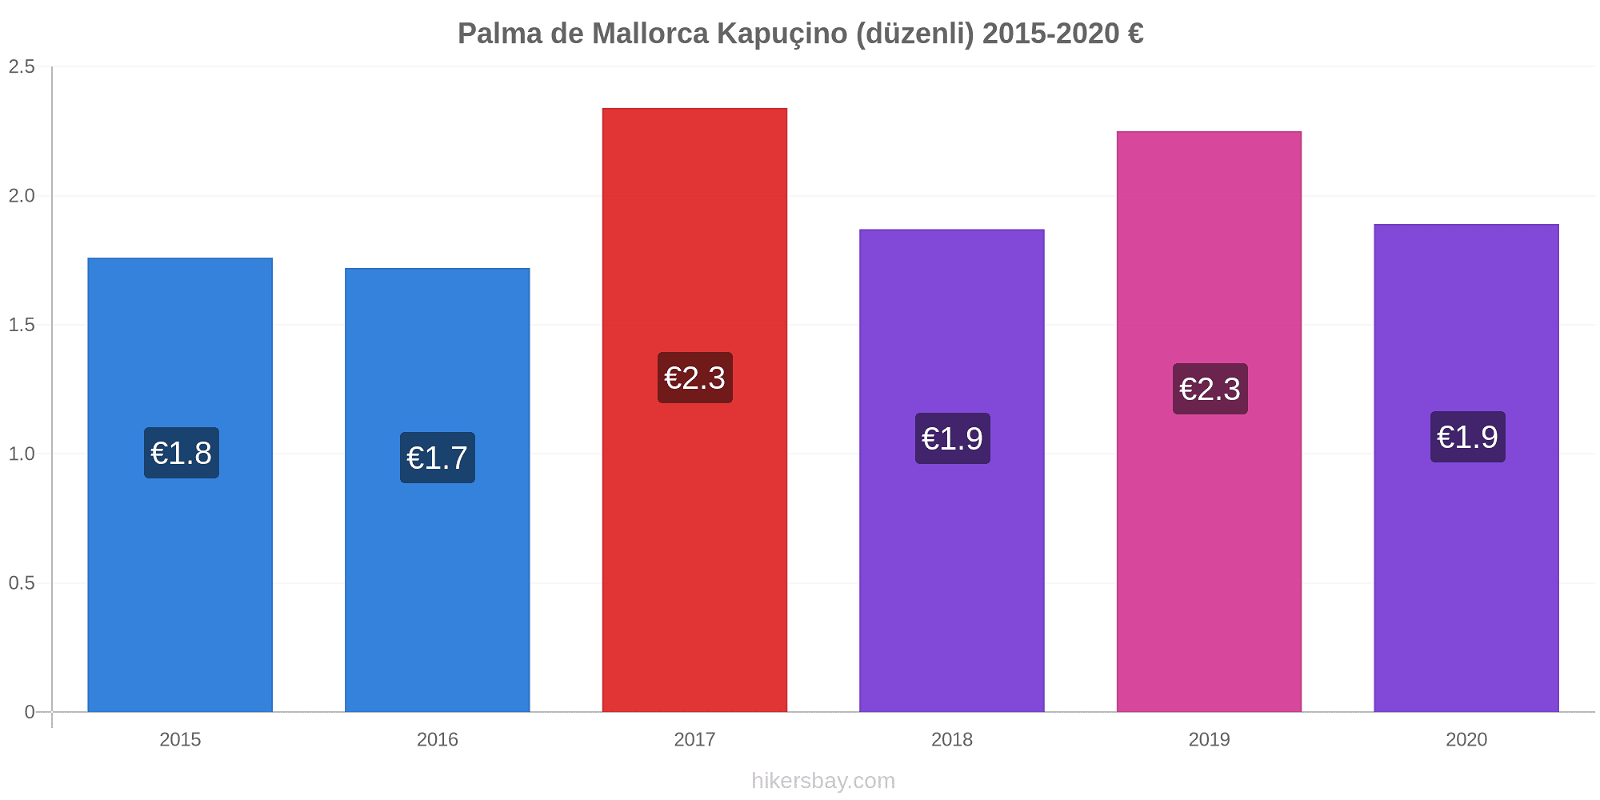 Palma de Mallorca fiyat değişiklikleri Kapuçino (düzenli) hikersbay.com